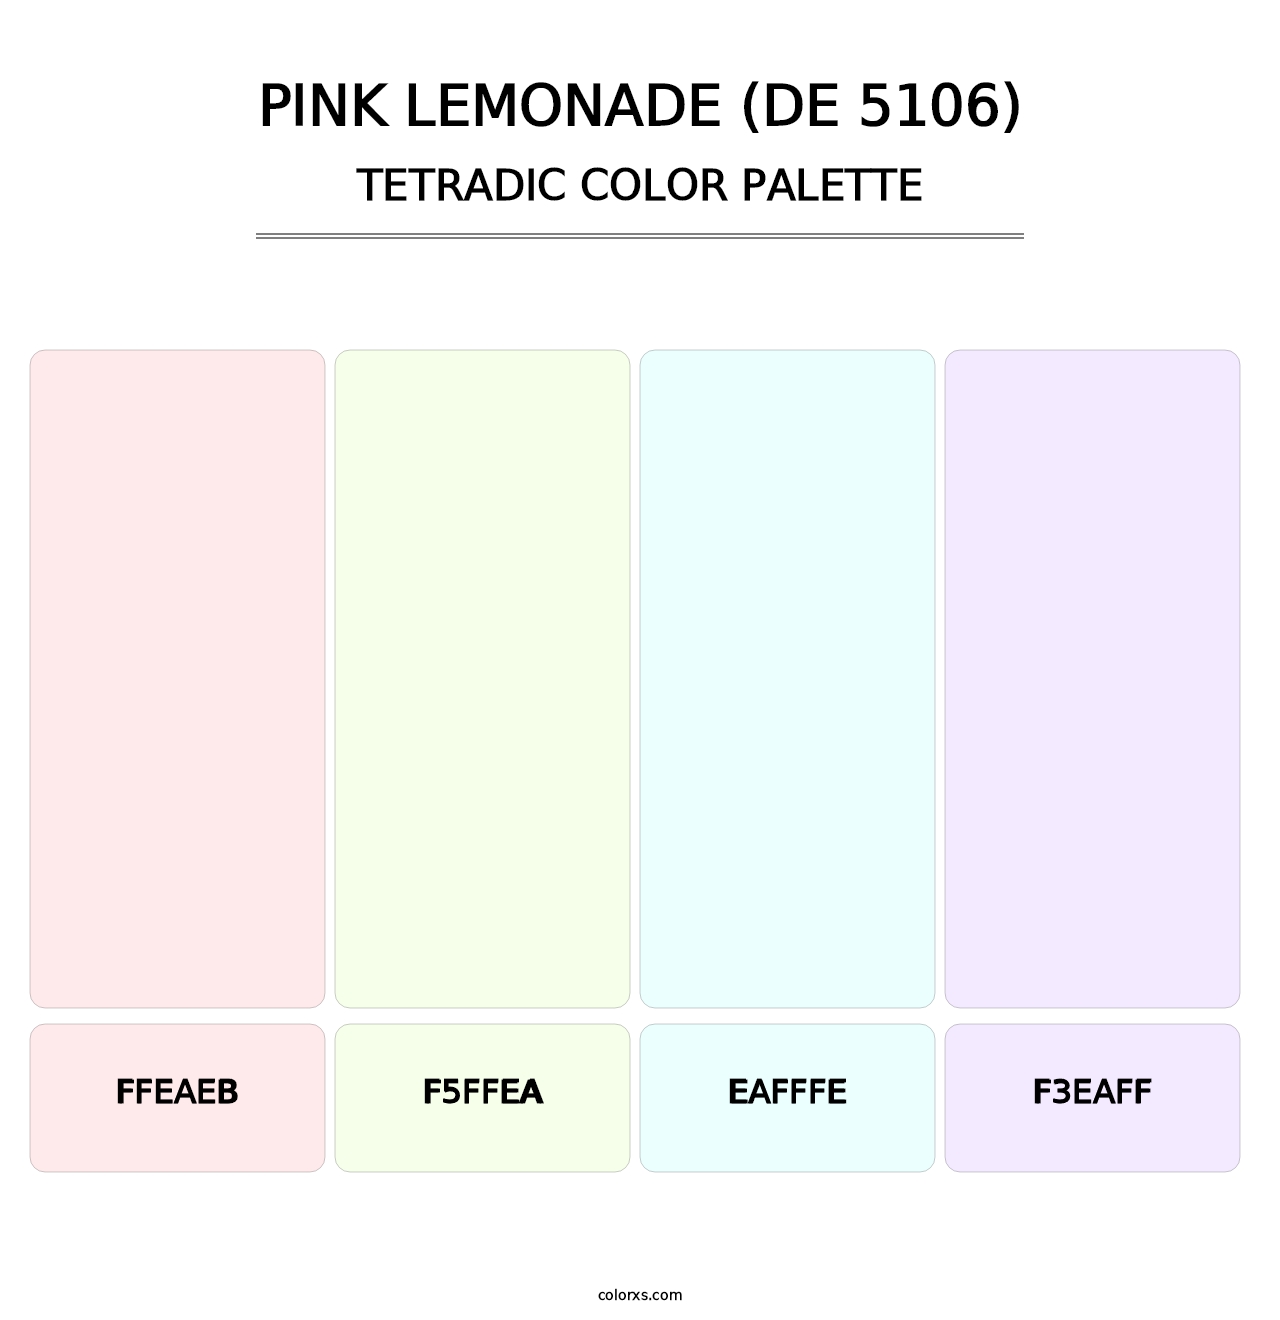 Pink Lemonade (DE 5106) - Tetradic Color Palette